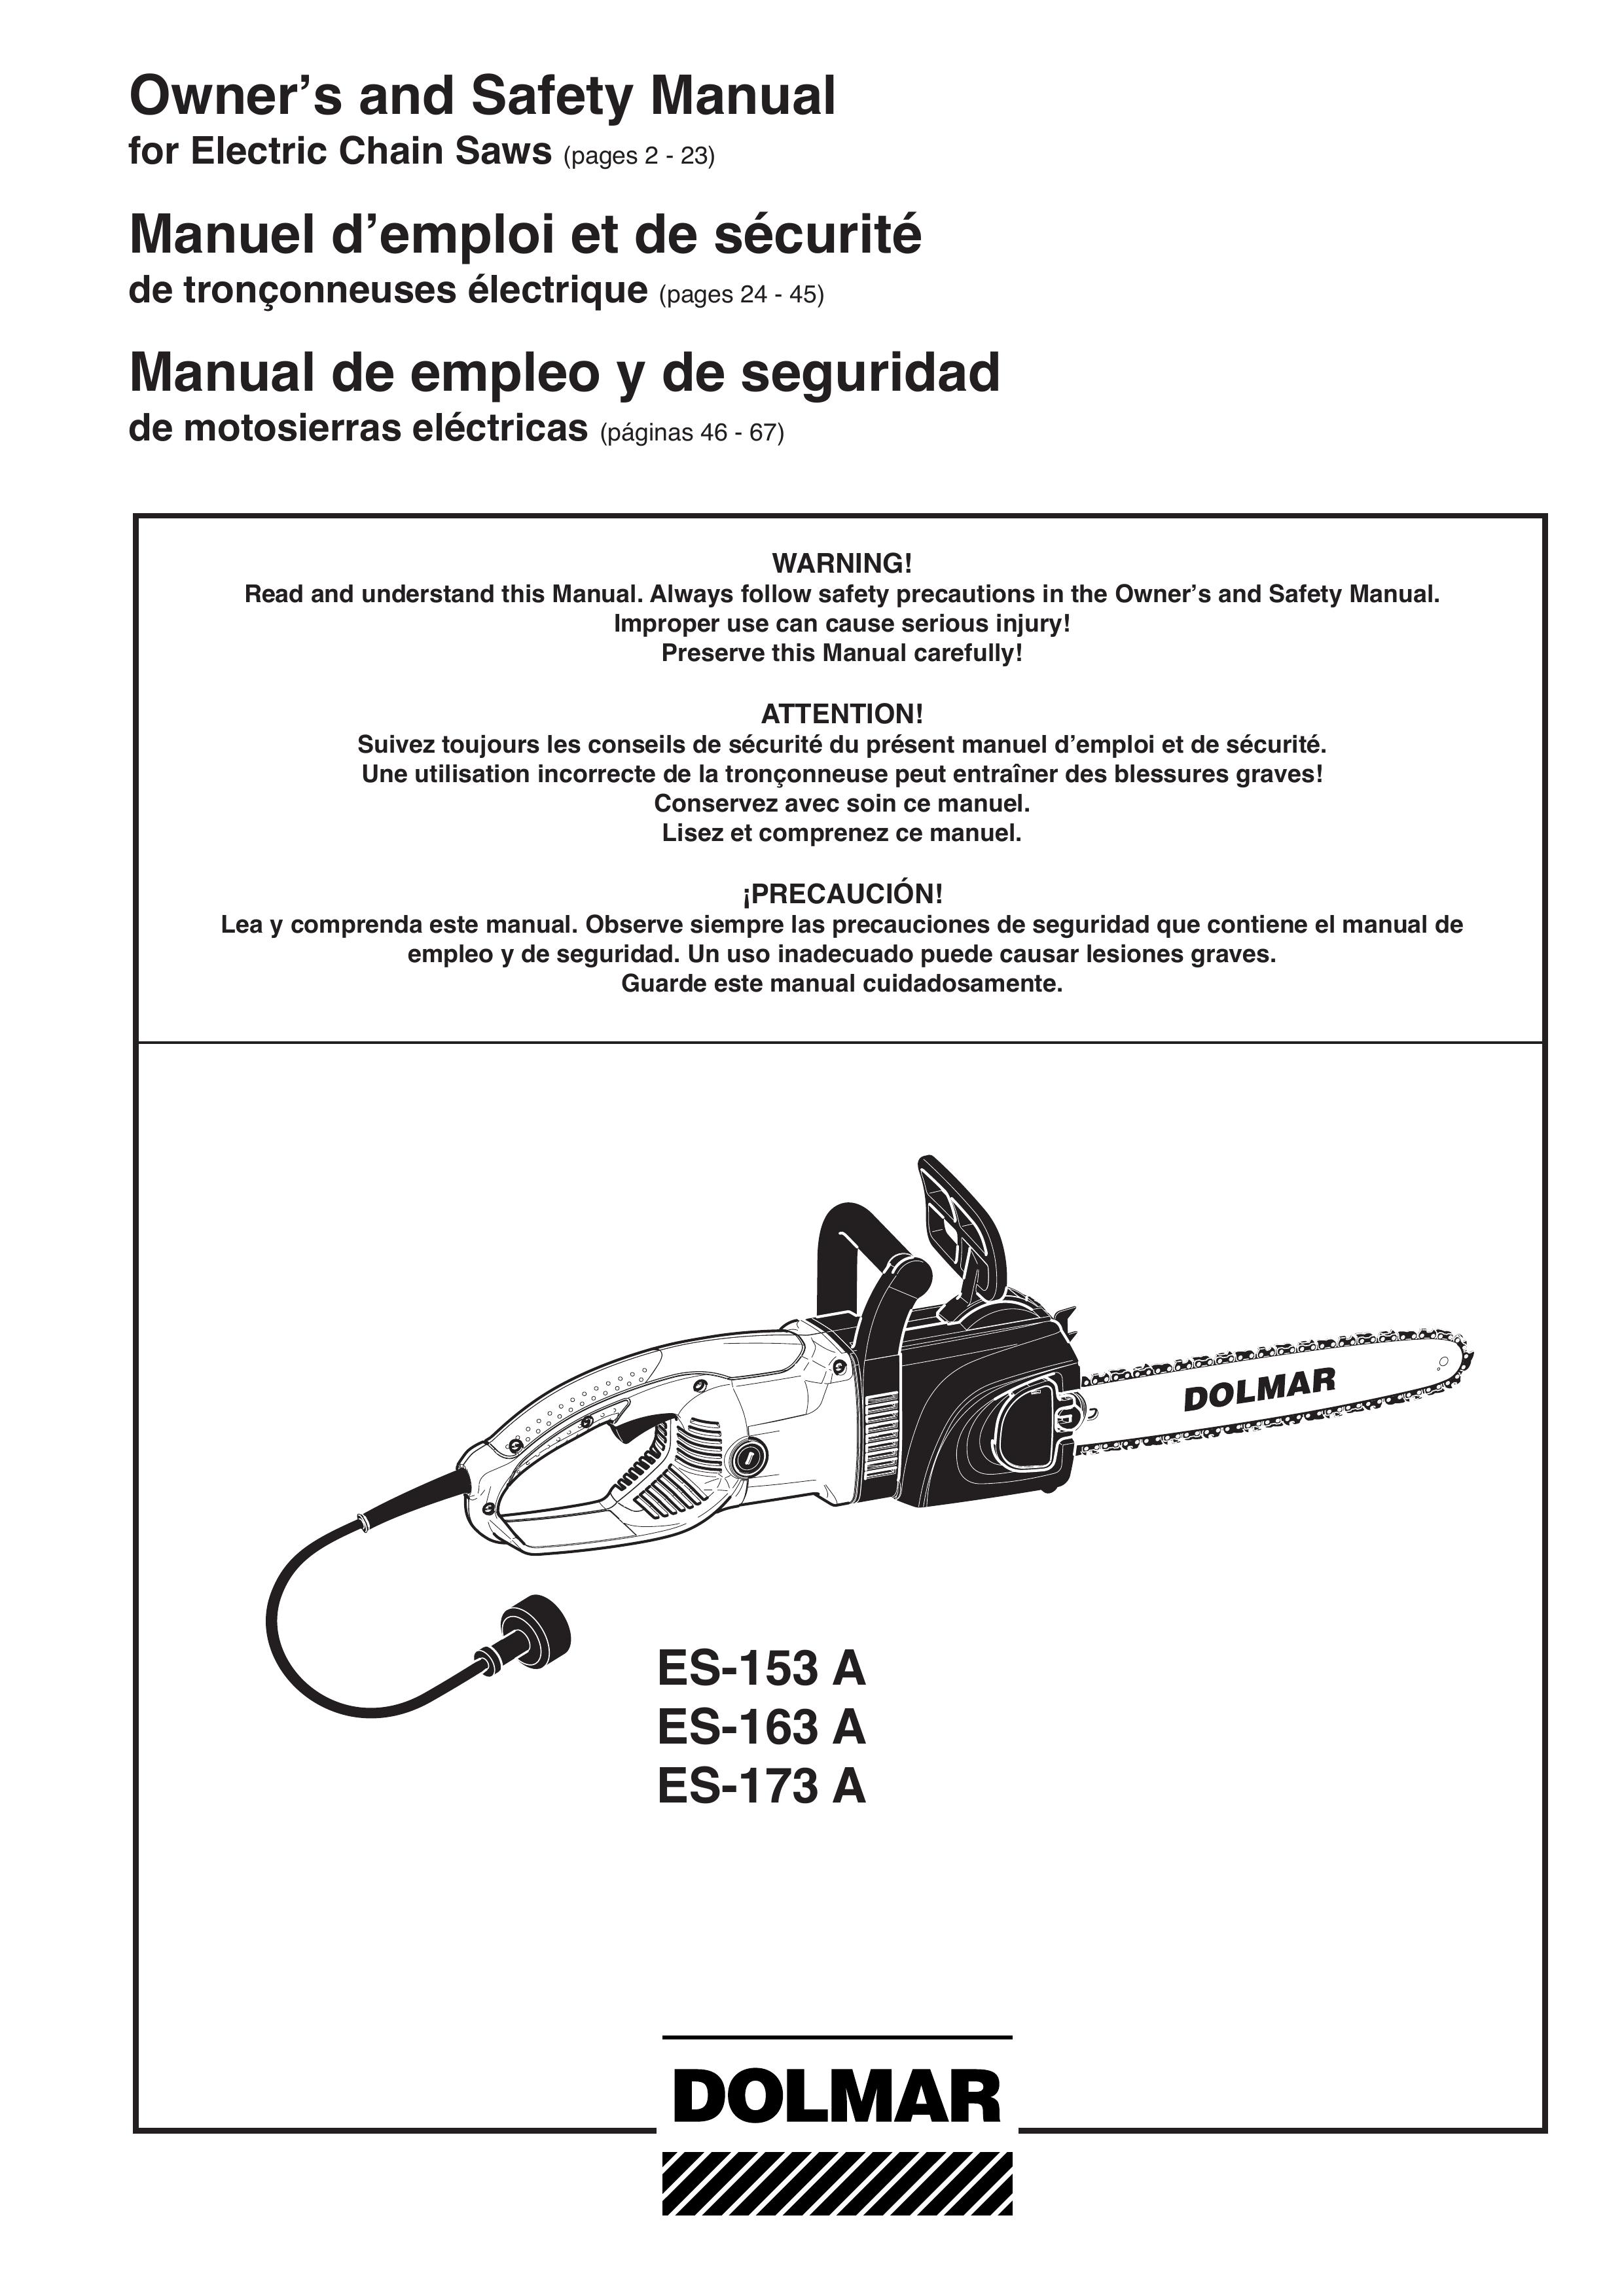 Dolmar ES-163 A Chainsaw User Manual